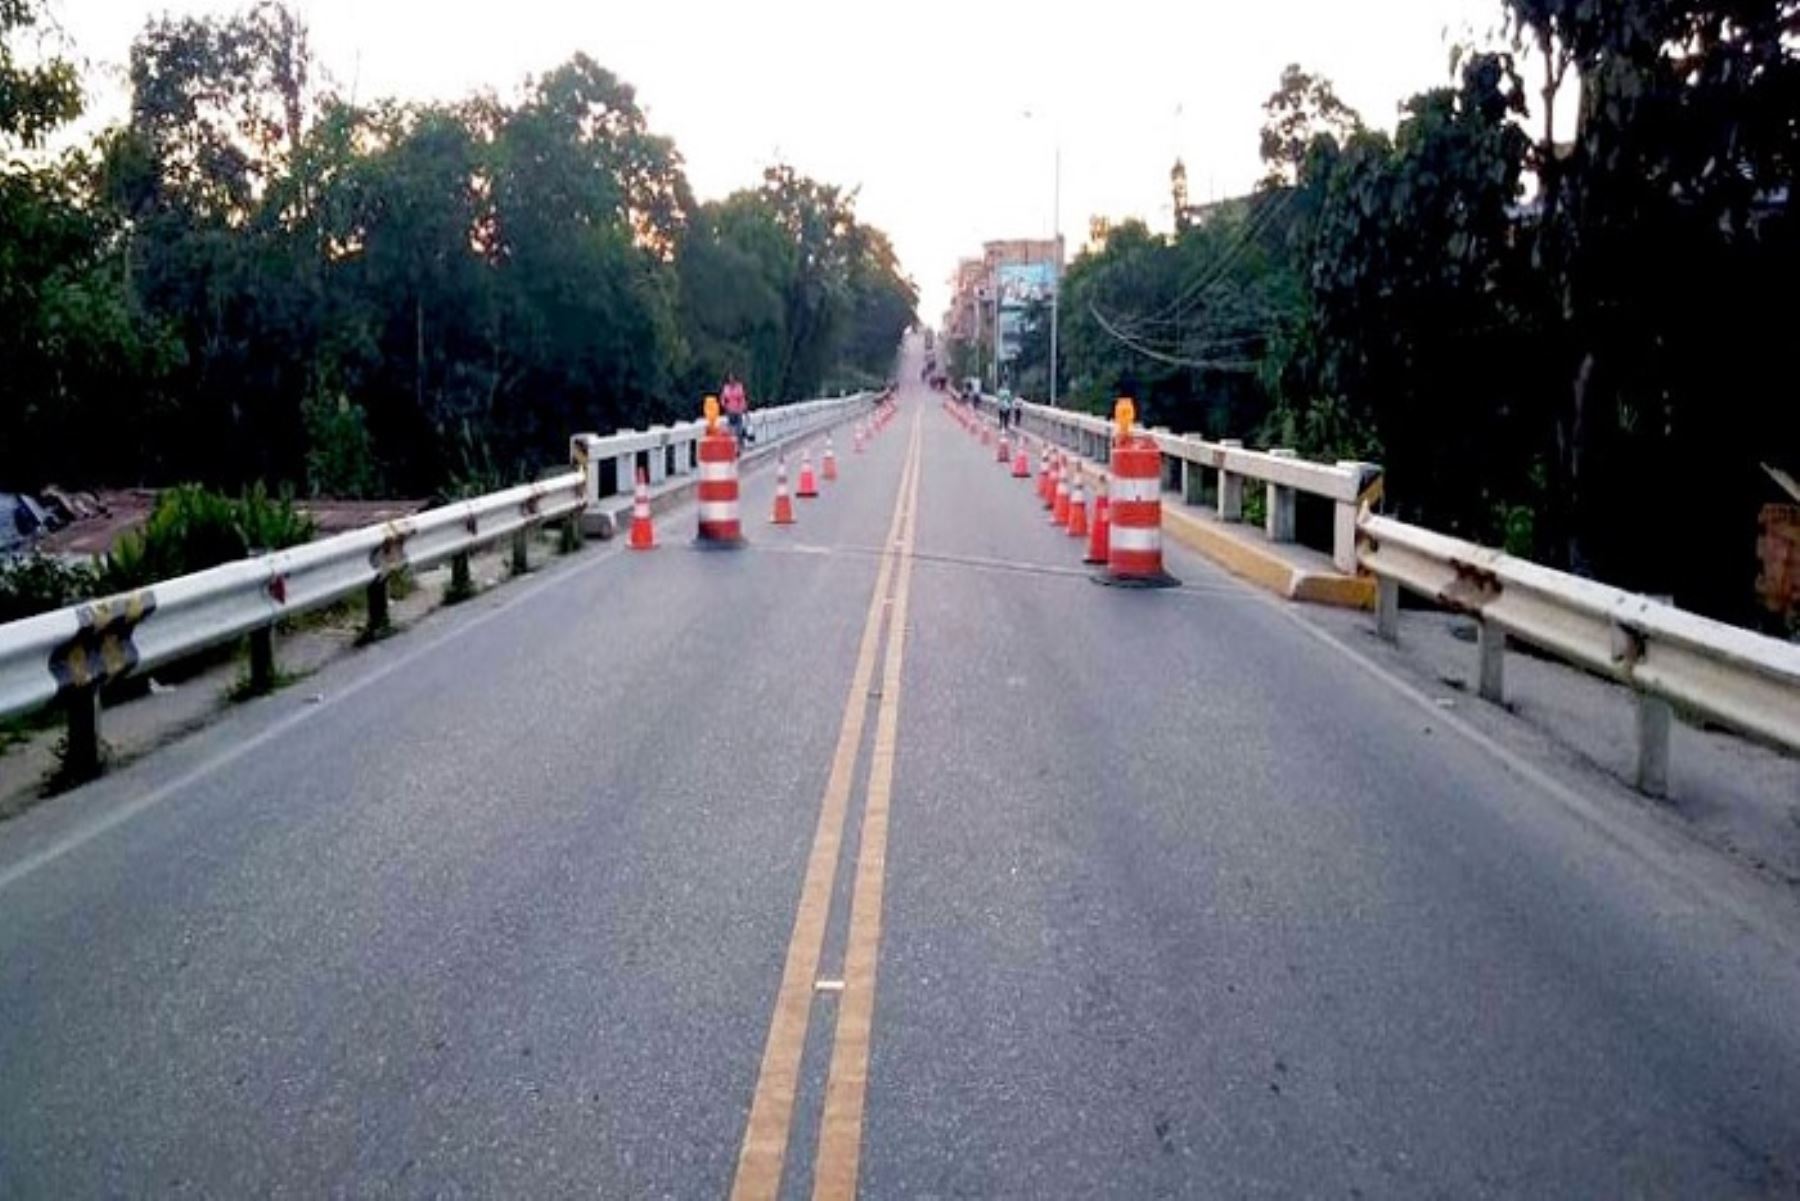 La carretera que va de Paita, en Piura, a Yurimaguas, en Loreto, ha sido cerrada totalmente al tránsito, en el kilómetro 431, puente Naranjillo, región San Martín, por trabajos urgentes en unos de los pilares,informó la responsable de Imagen y Comunicaciones de IIRSA Norte, Patricia Echegaray.